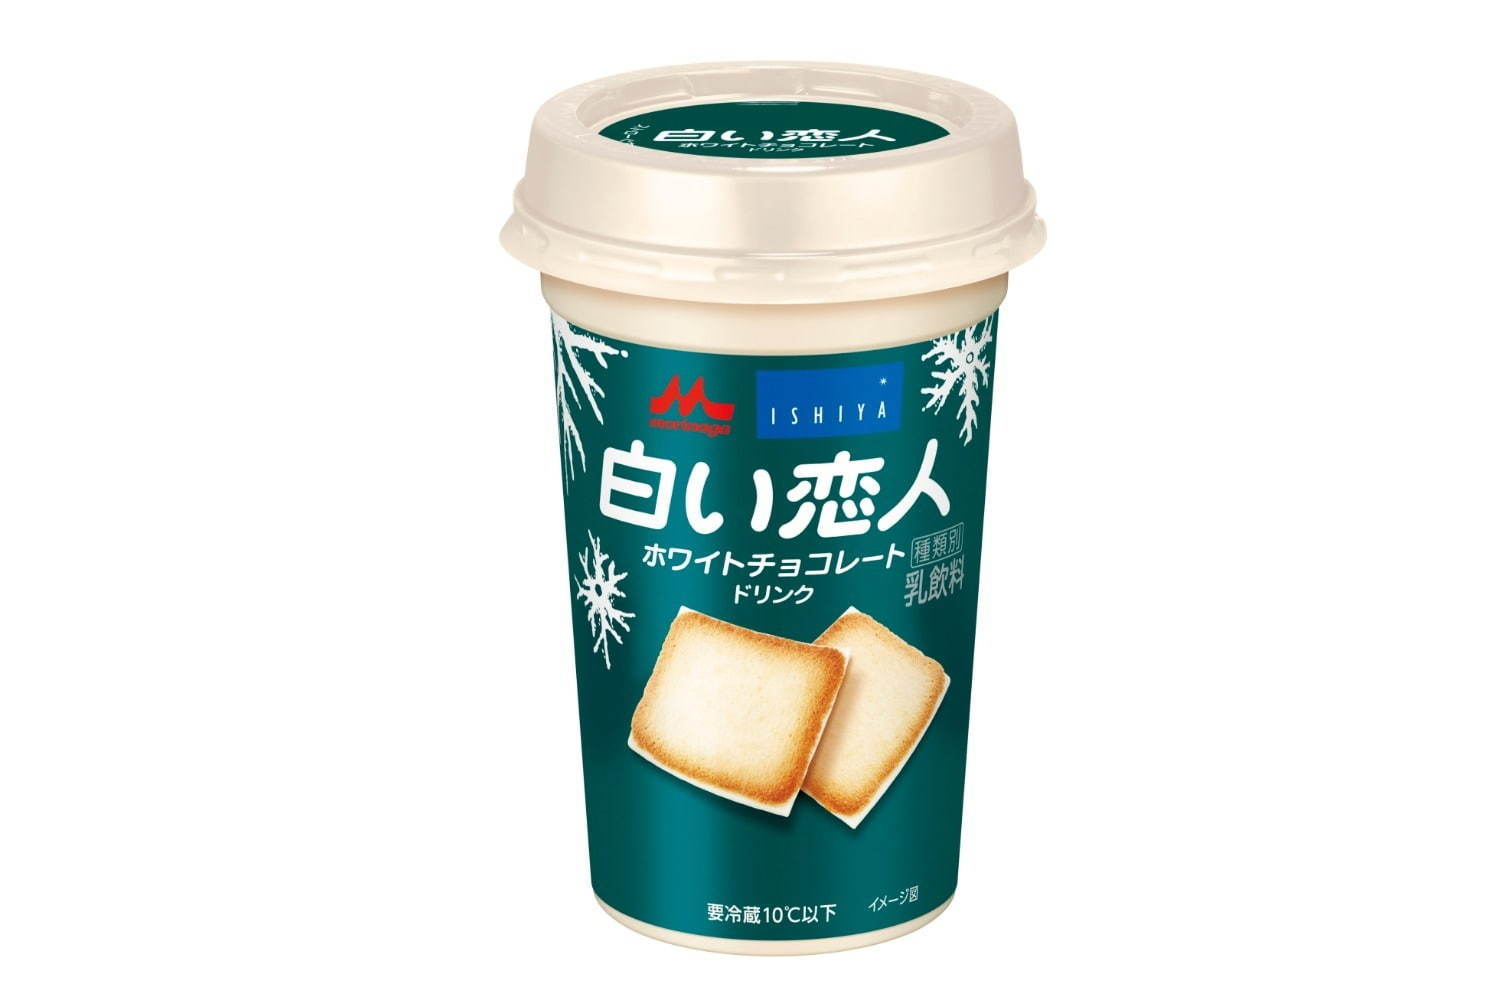 白い恋人サンドアイス 北海道銘菓がアイスに ホワイトチョコ風アイスをバタークッキーでサンド ファッションプレス